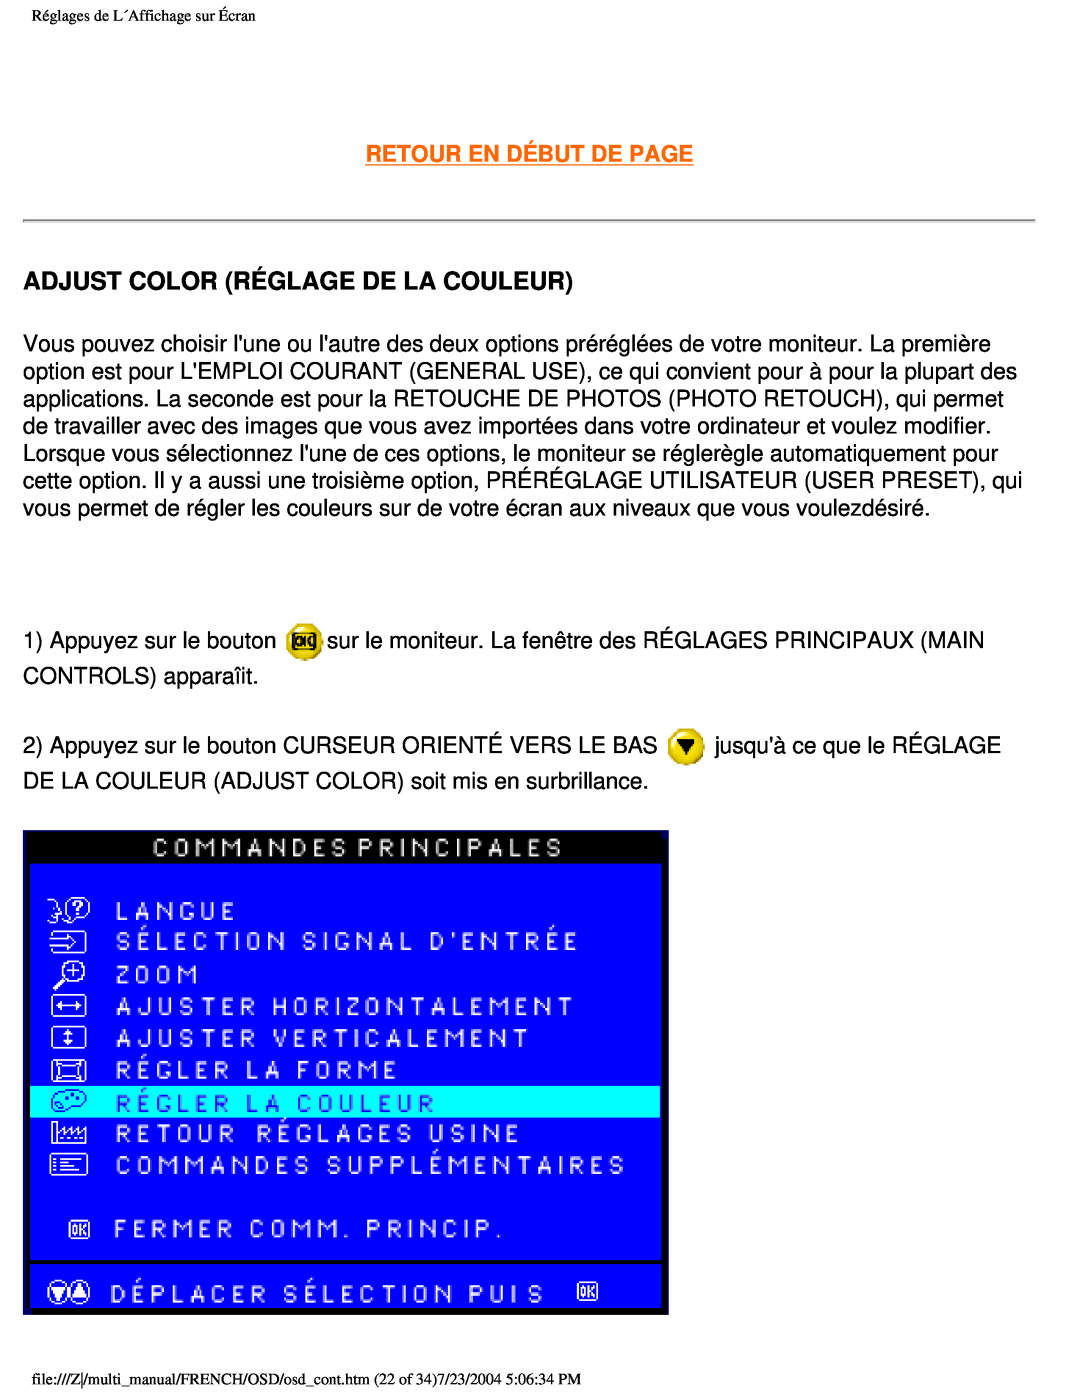 Philips 107B3 user manual Adjust Color Réglage De La Couleur, Retour En Début De Page 